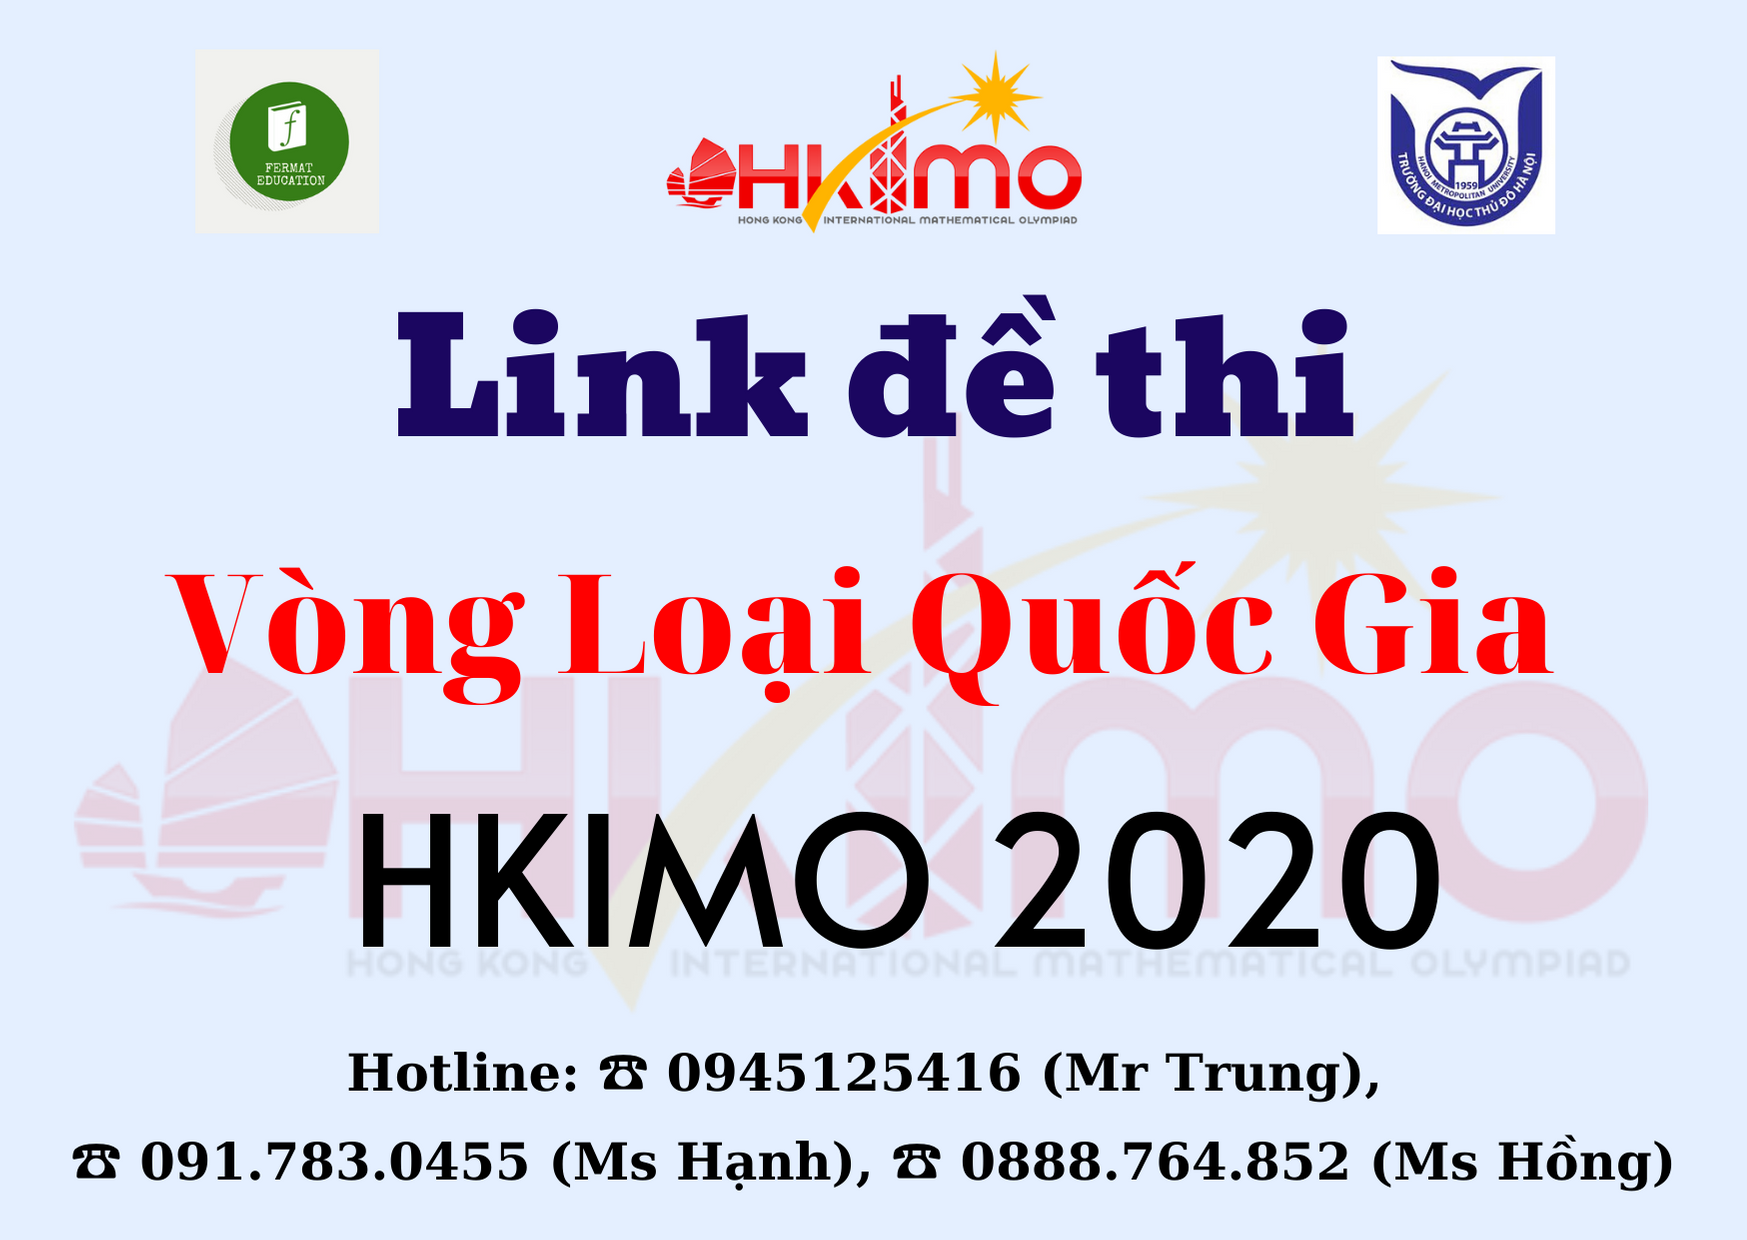 Hướng dẫn thi Vòng loại quốc gia kỳ thi Olympic Toán học HKIMO 2020